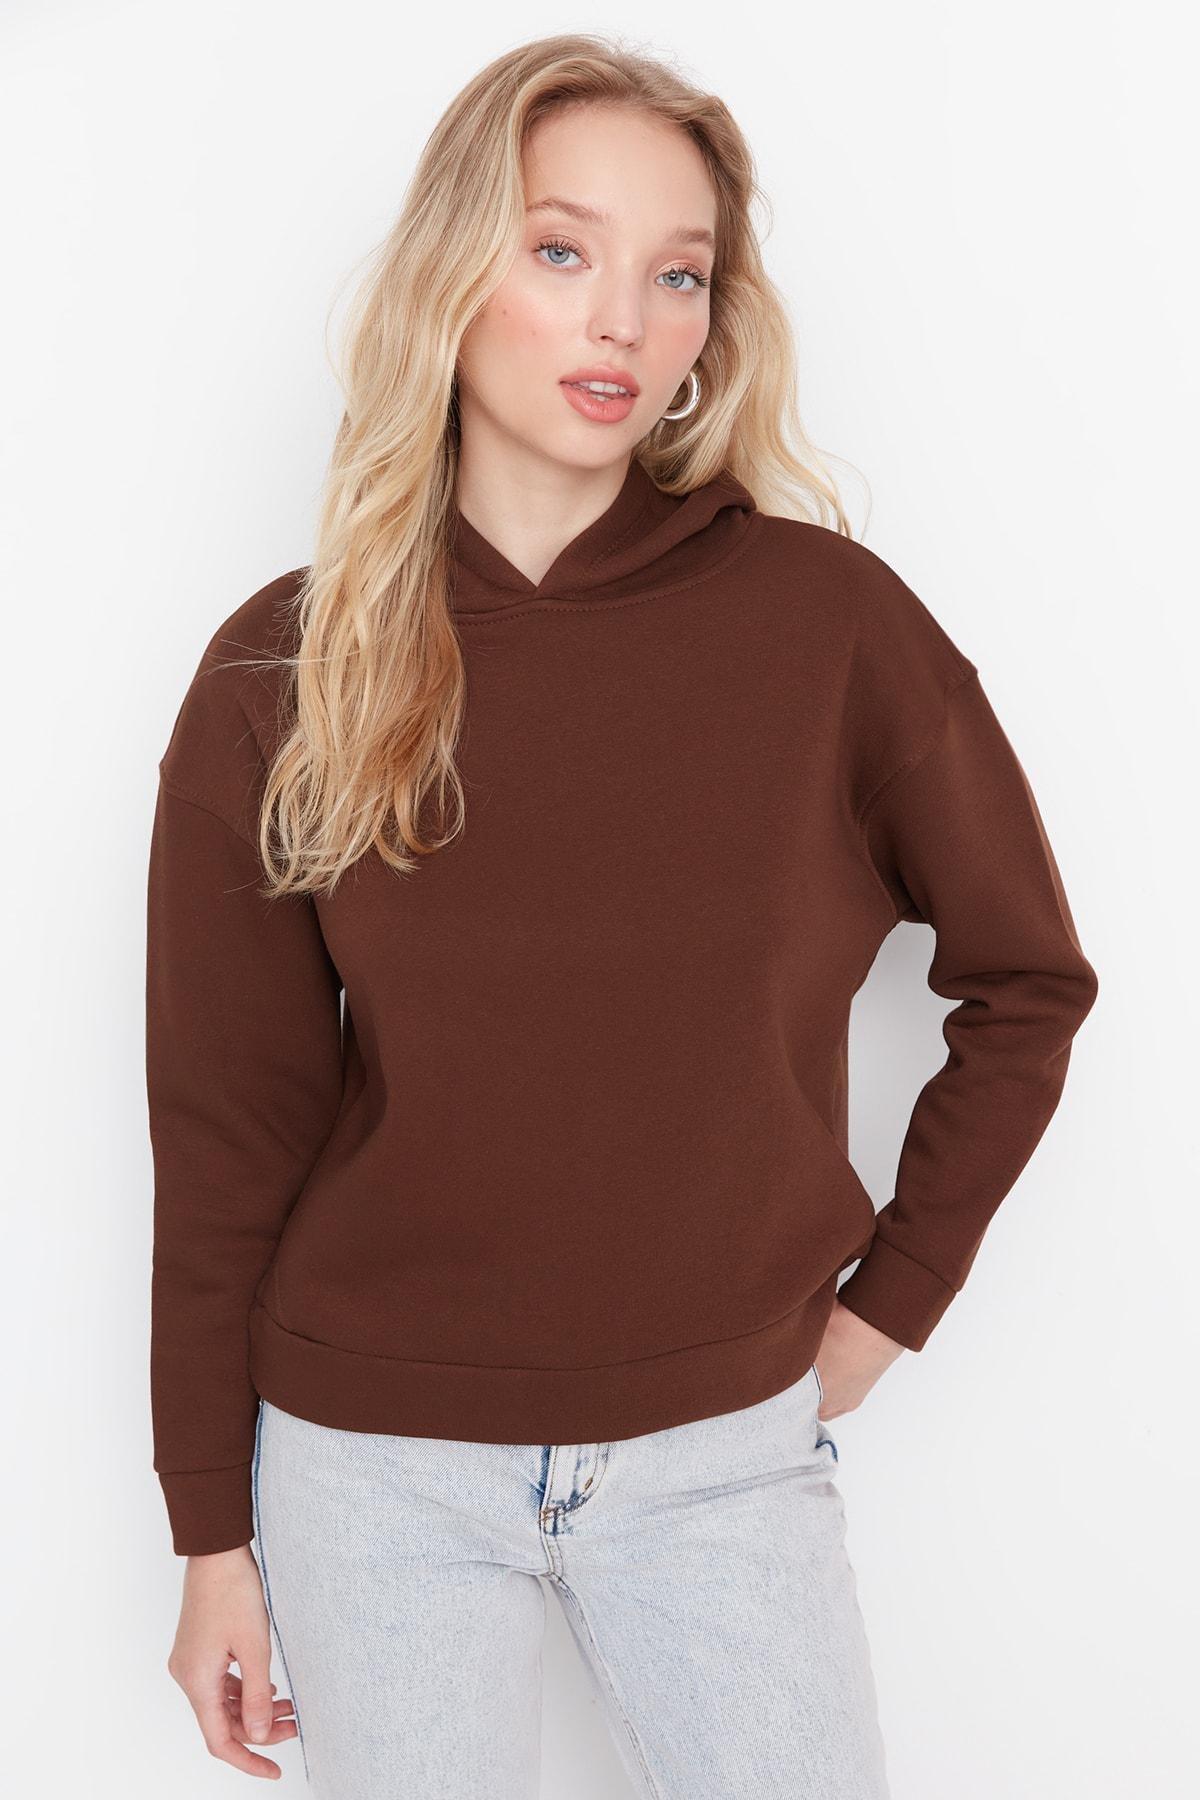 Trendyol - Brown Plain Hooded Sweatshirt